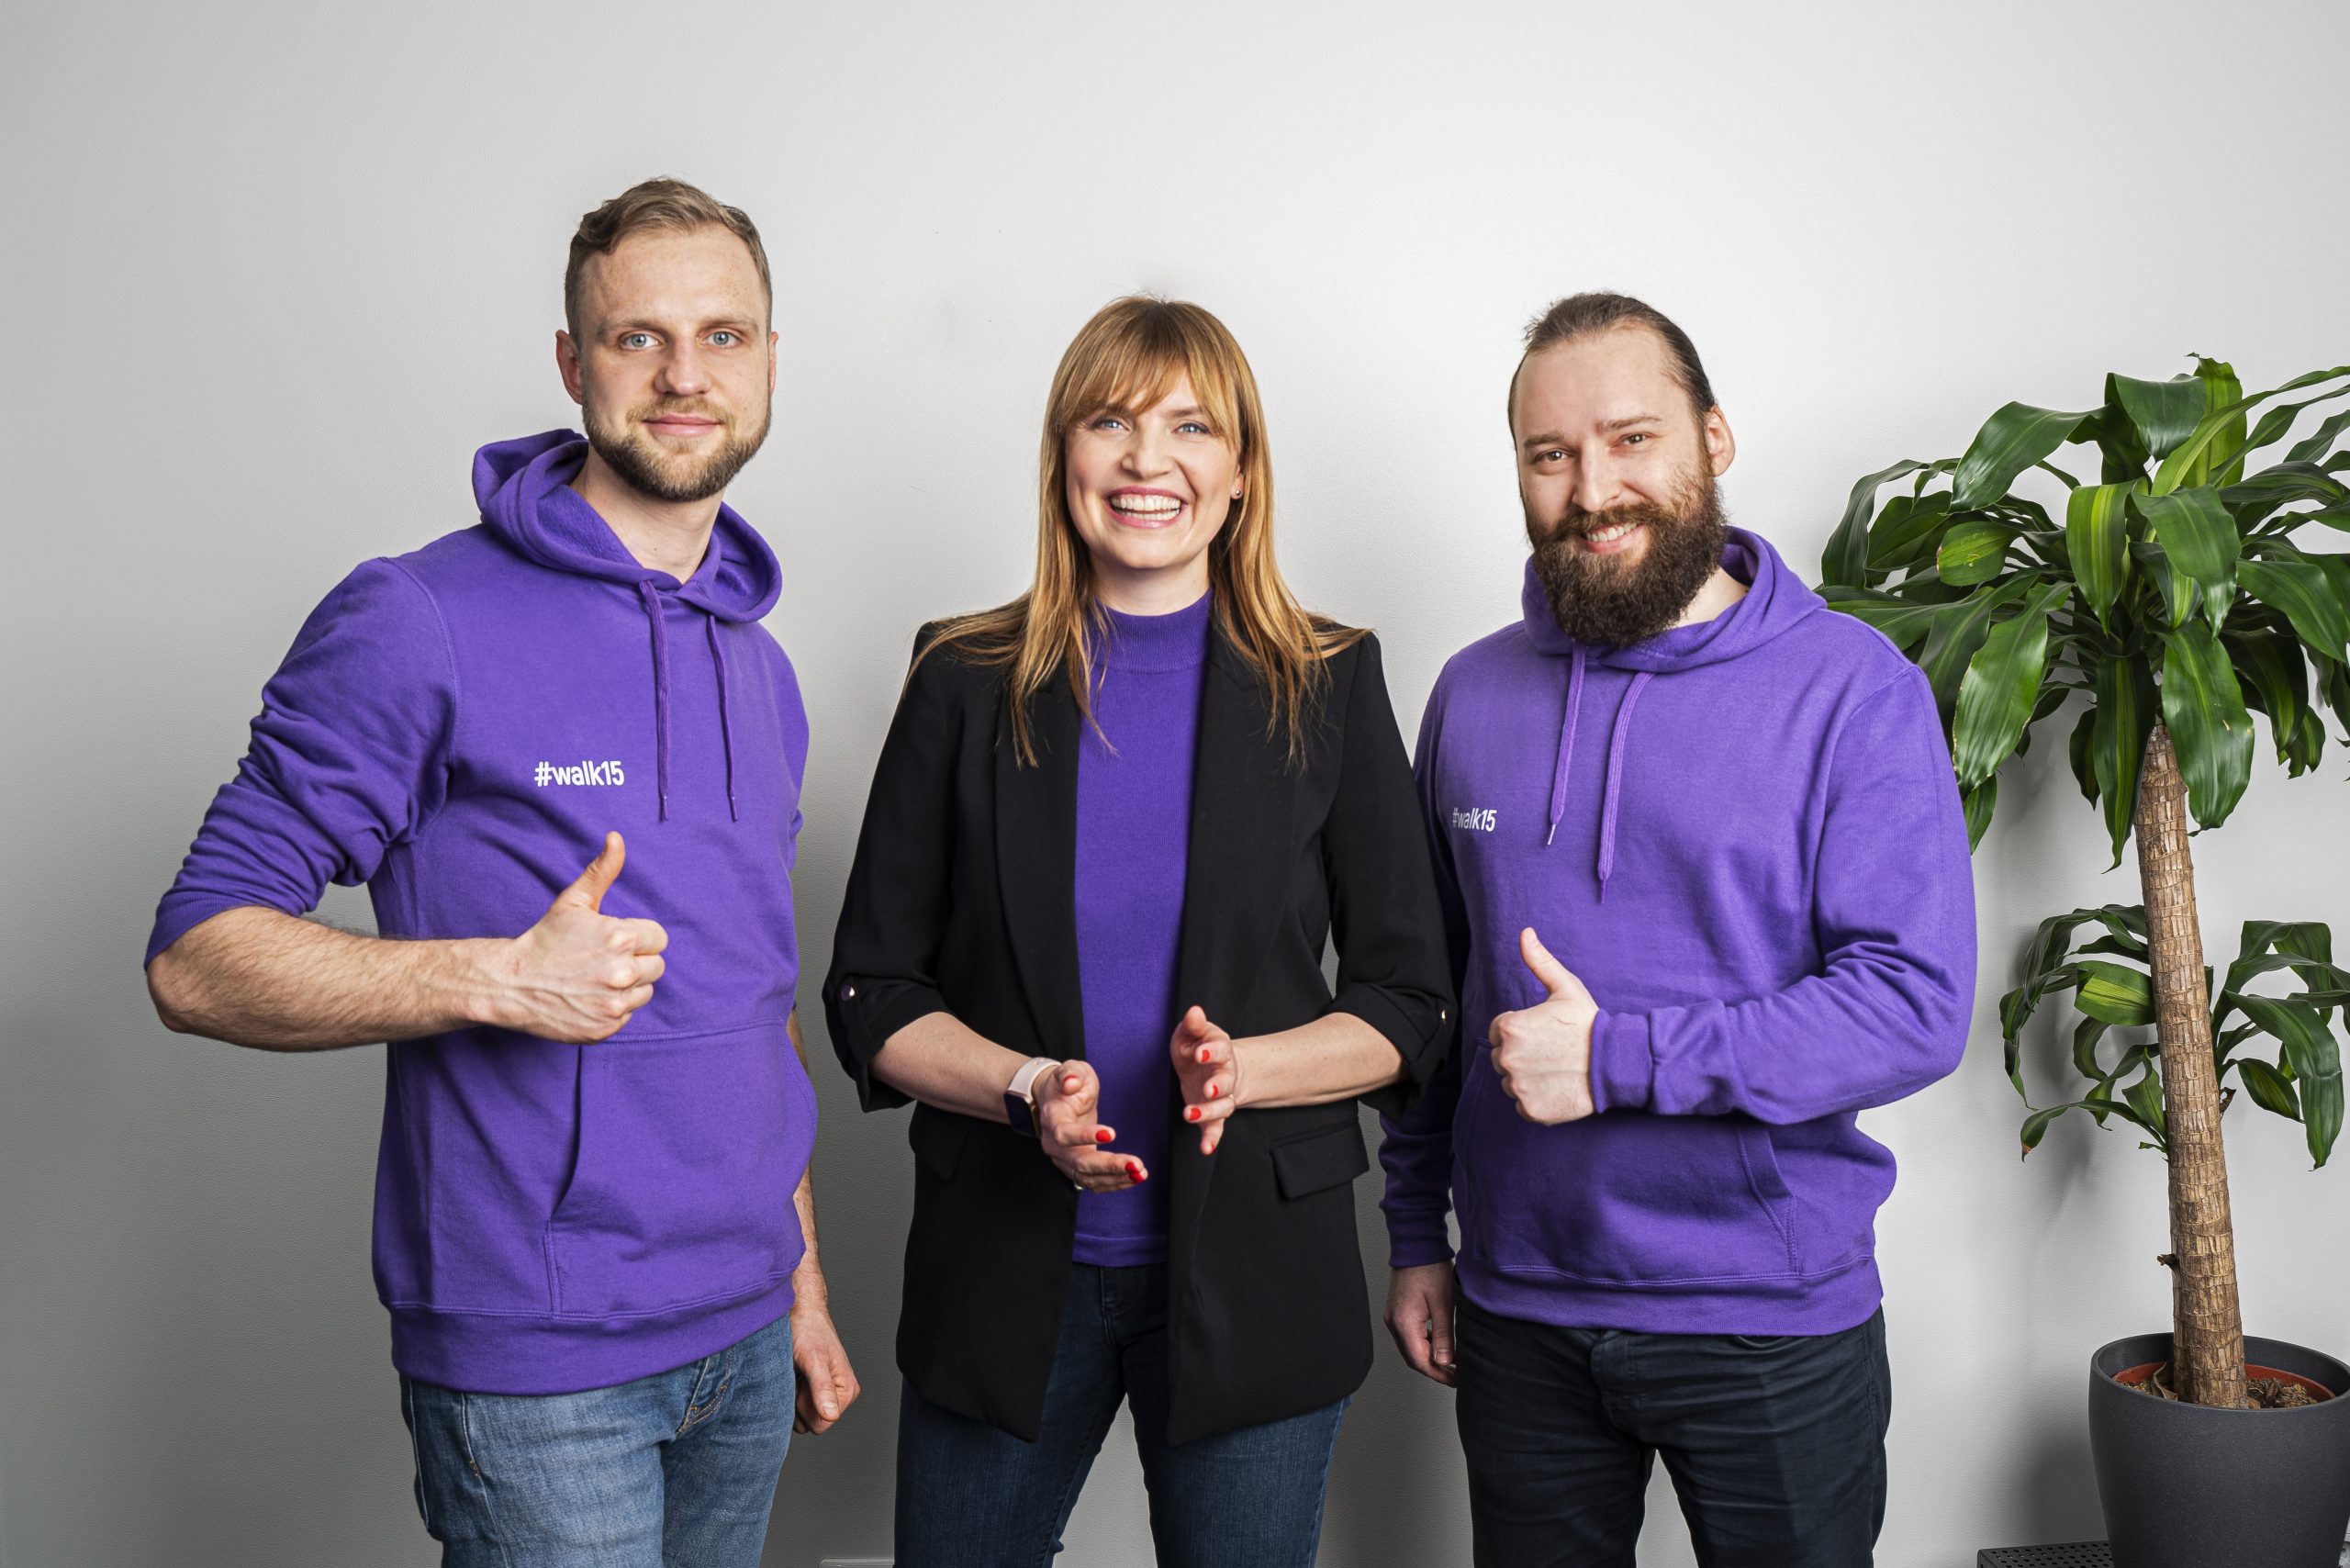 Lietuvos ir Latvijos verslo angelai investavo į penkis kartus verte augusį vaikščiojimo startuolį „Walk15“